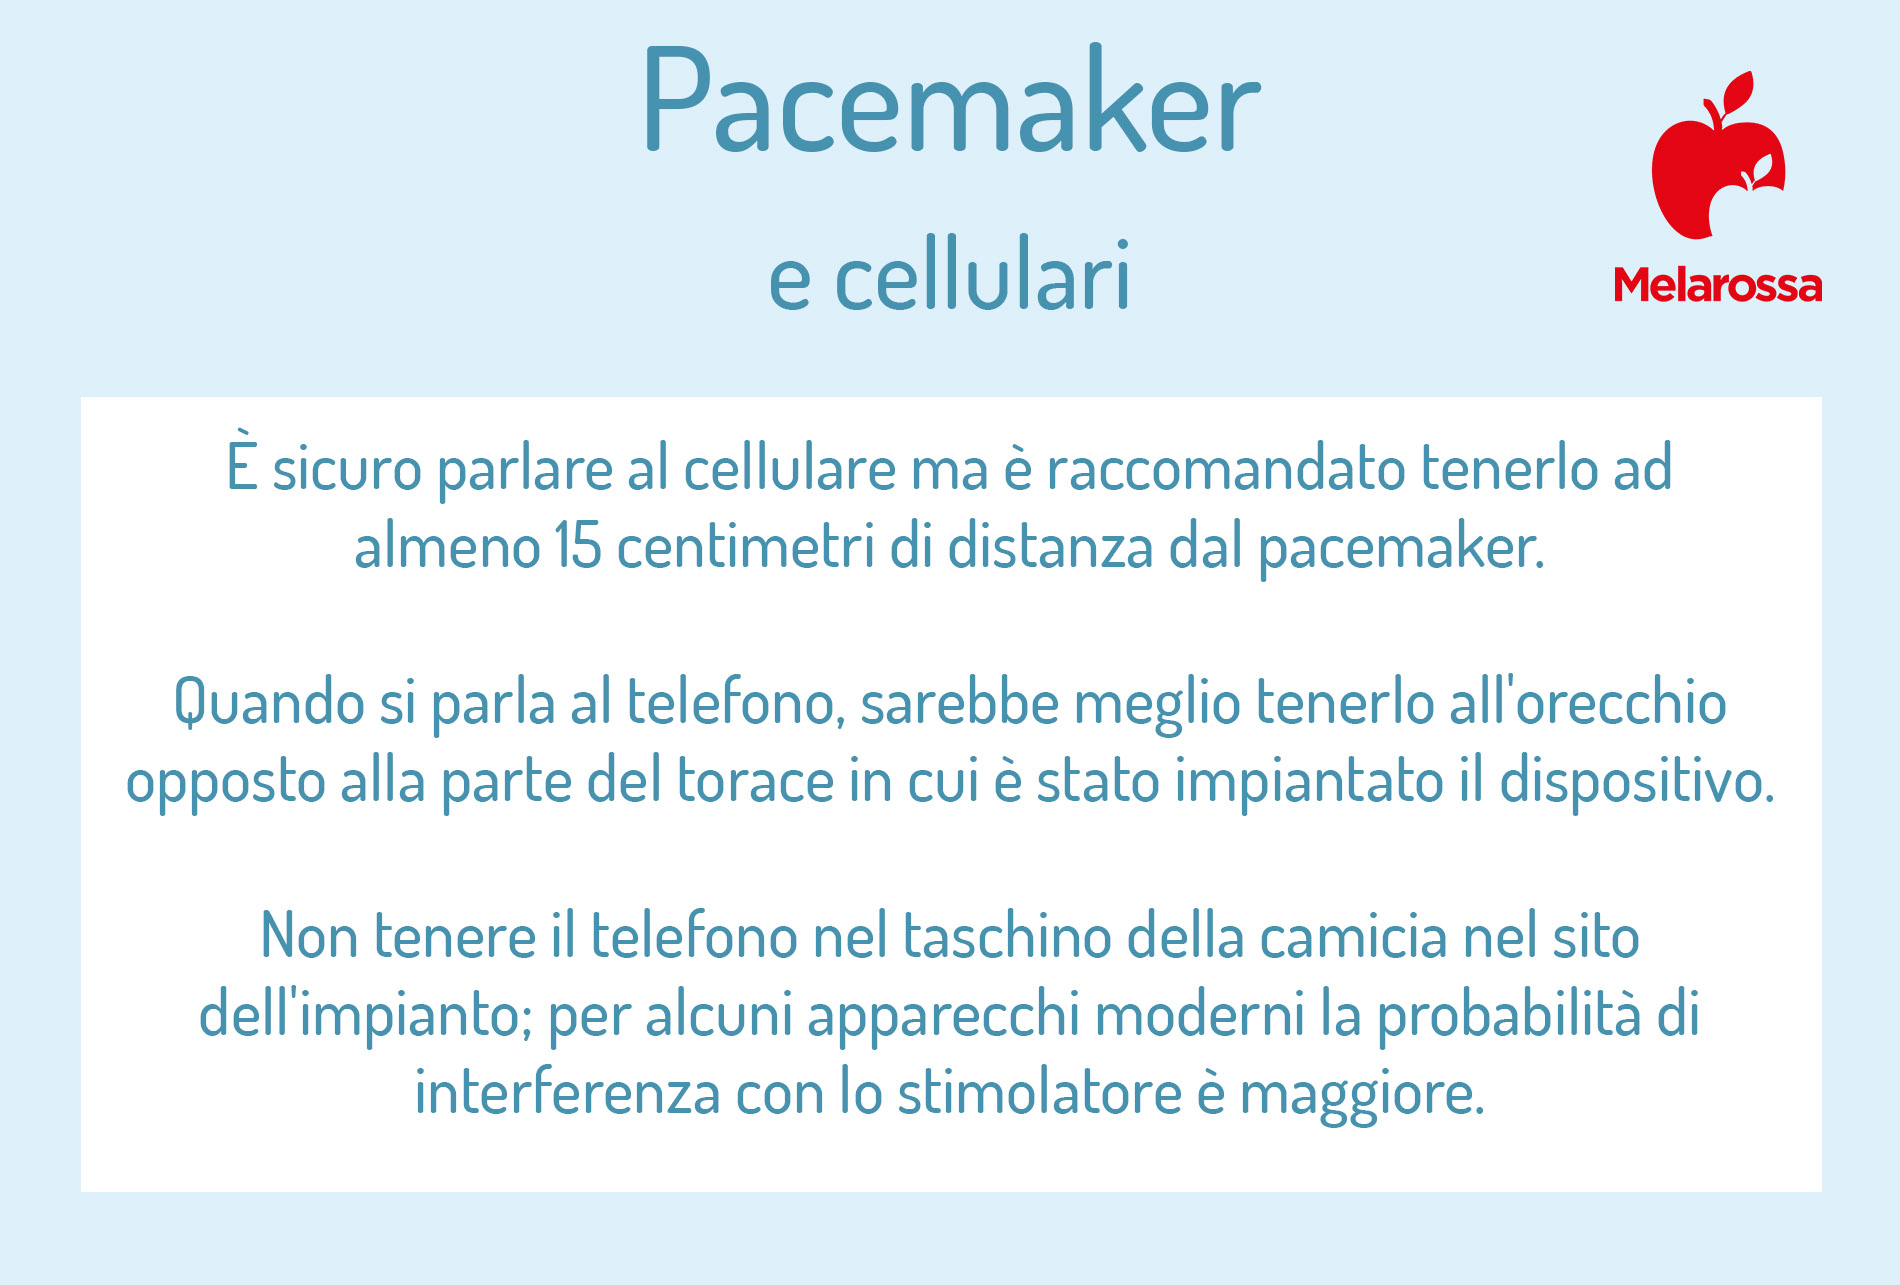 pacemaker e cellulari: come comportarsi